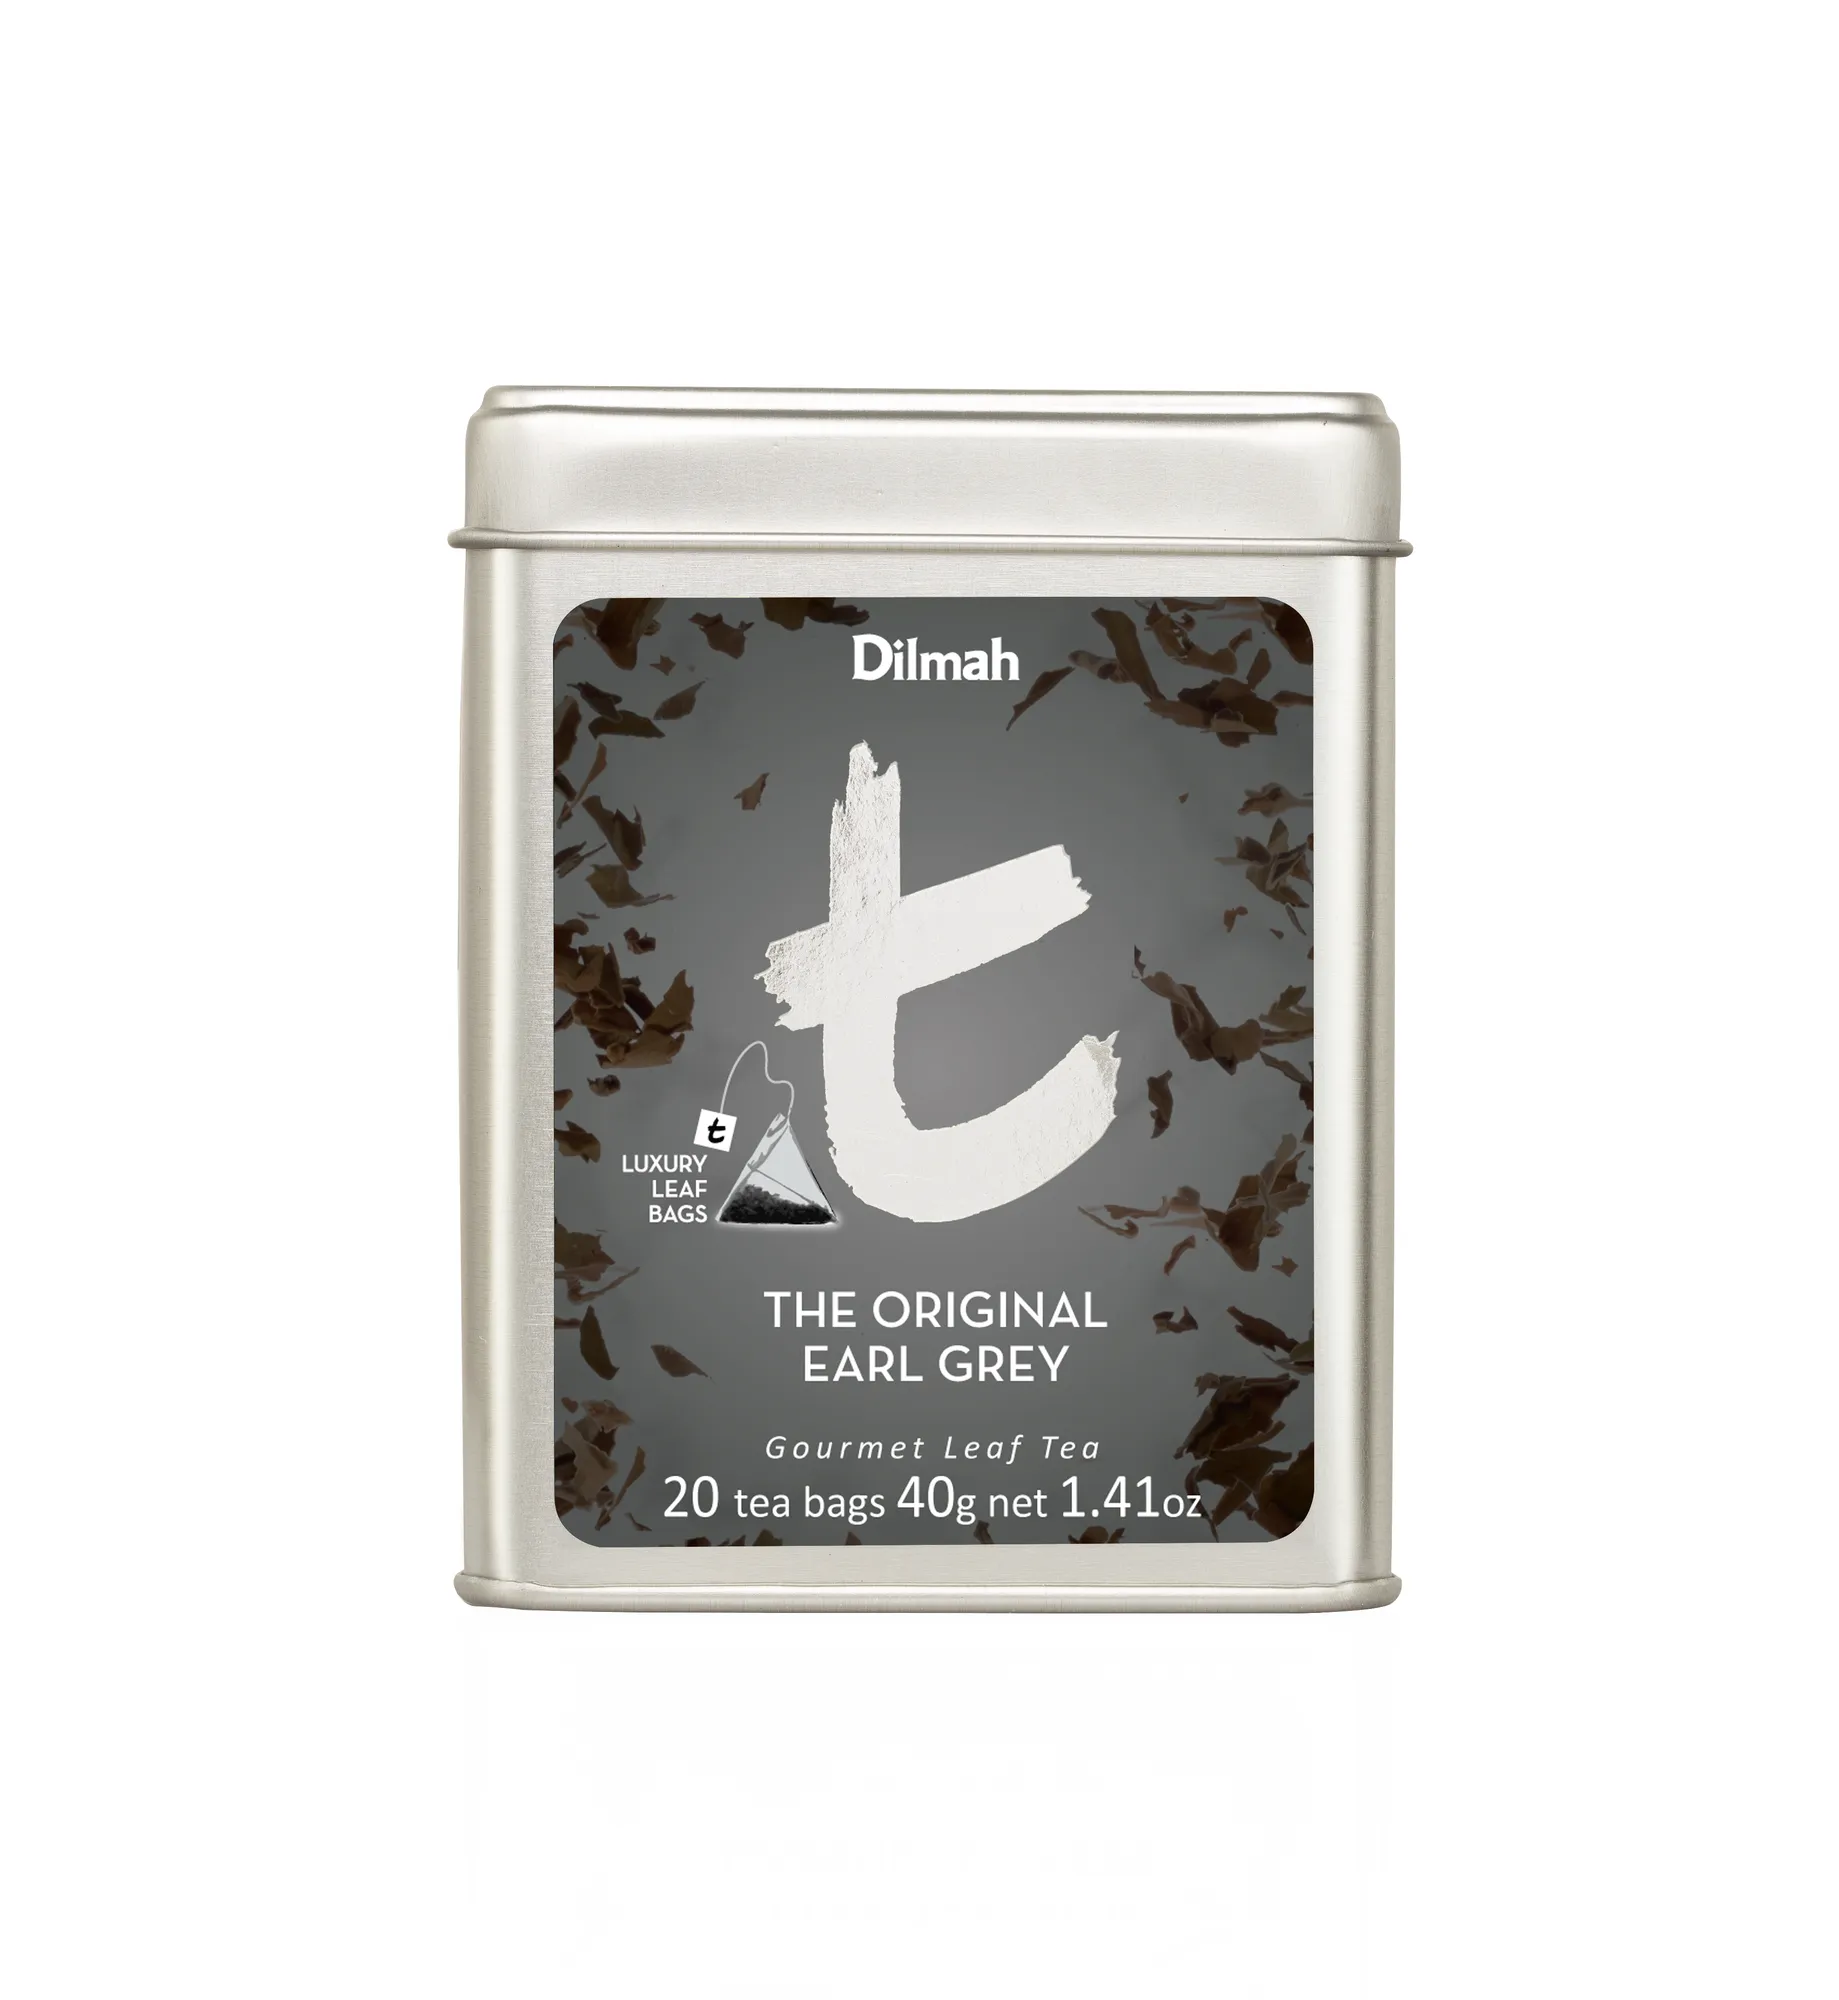 20 tea bags of Original Earl Grey Tea in tin